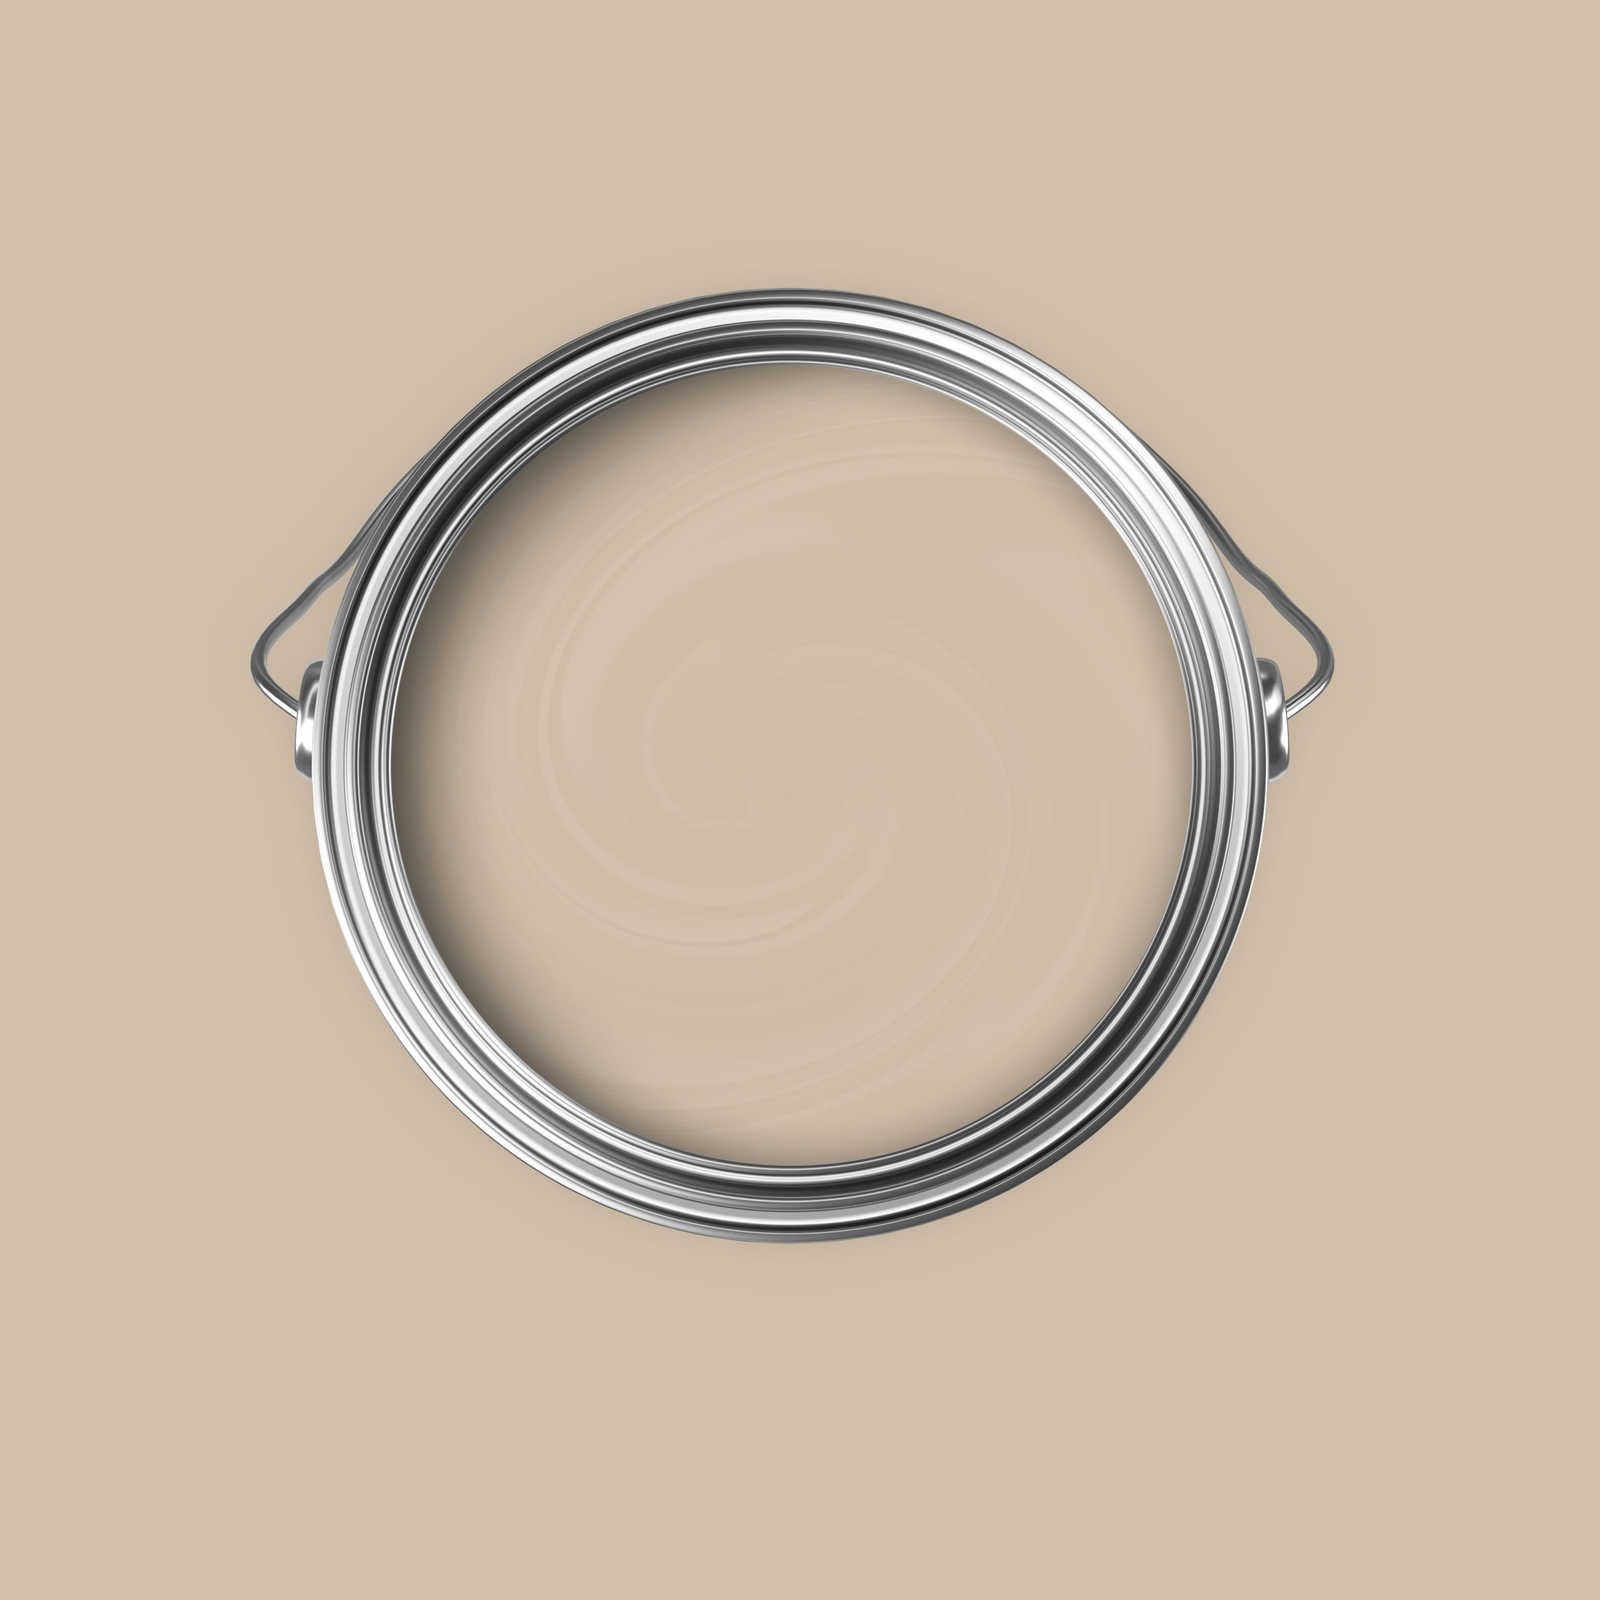             Premium Wall Paint timeless light beige »Modern Mud« NW715 – 5 litre
        